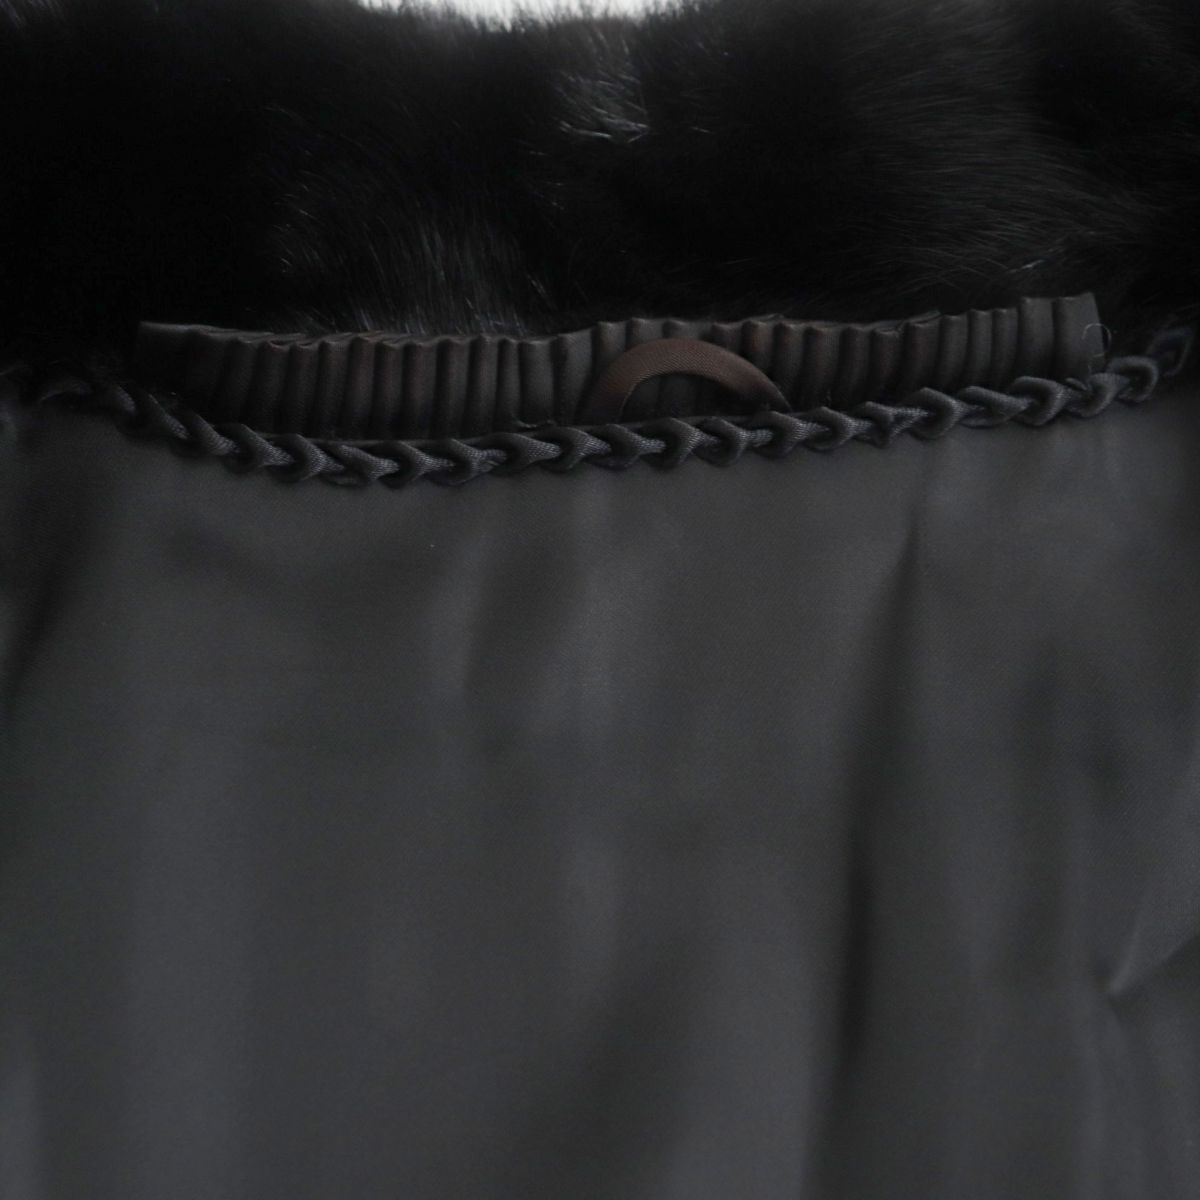 毛並み美品▼SAGA MINK サガミンク 本毛皮コート ブラック 大きめサイズ15号 毛質艶やか・柔らか◎